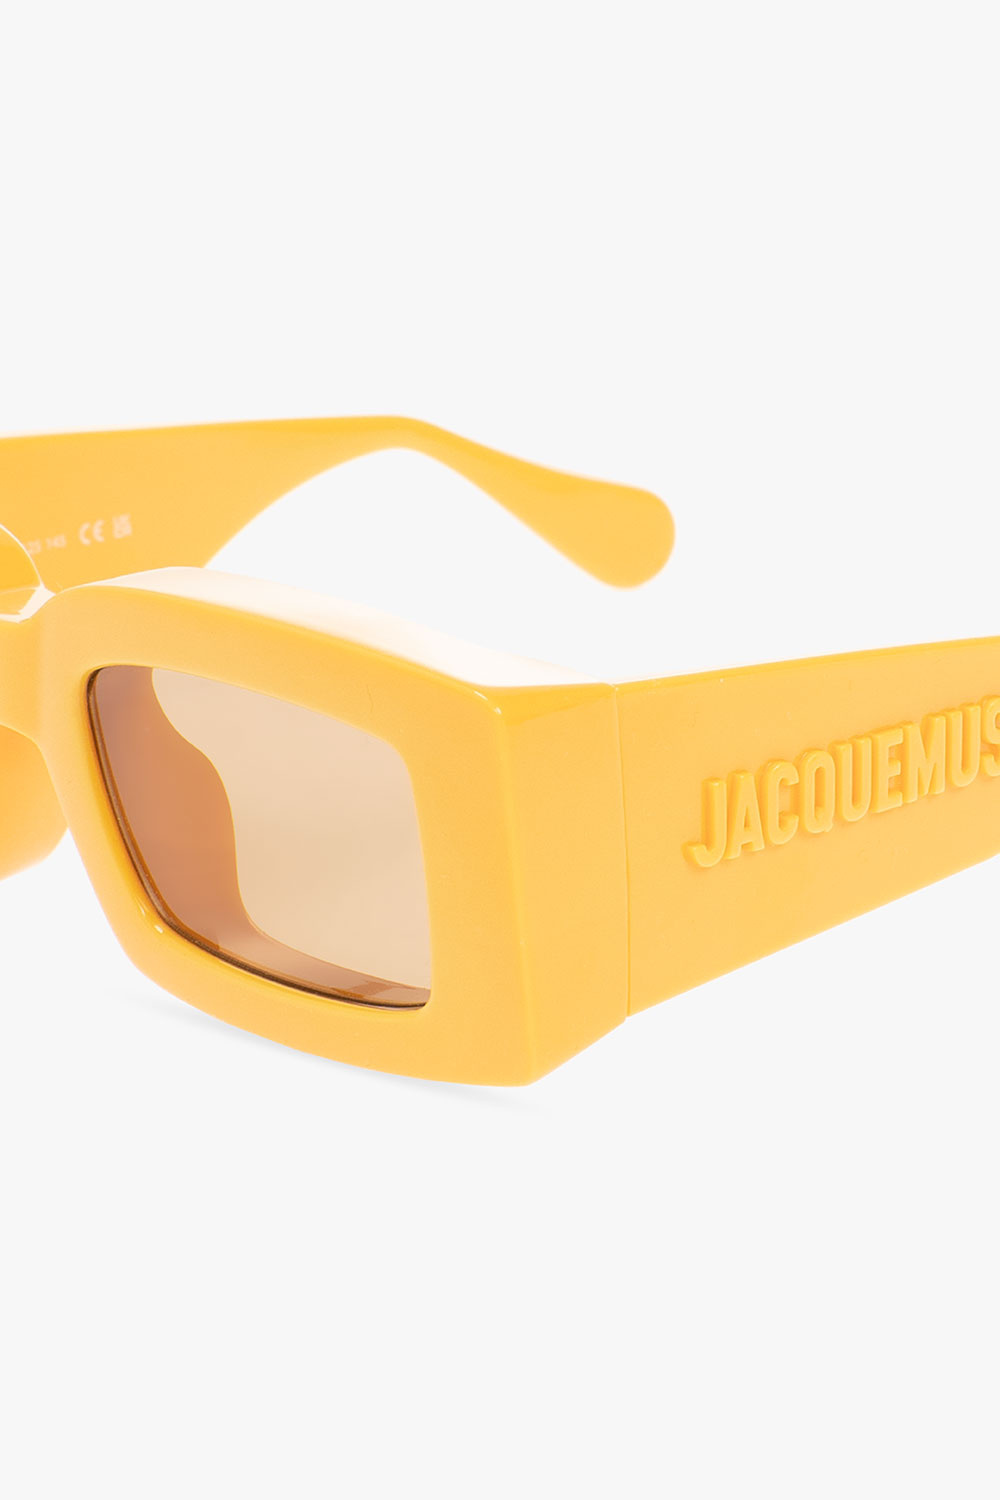 Jacquemus ‘Tupi’ skull sunglasses